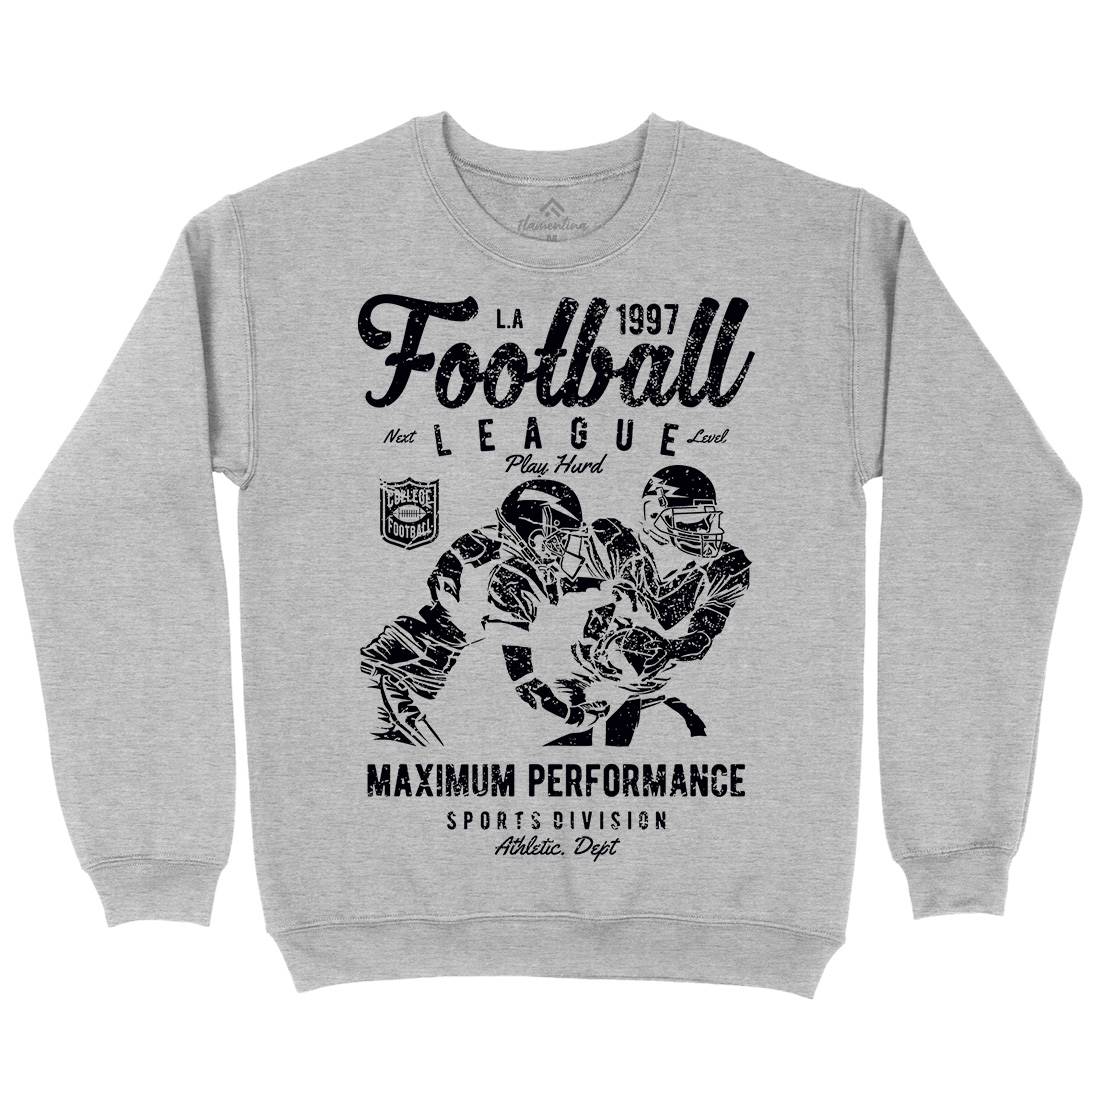 Football League Kids Crew Neck Sweatshirt Sport A665